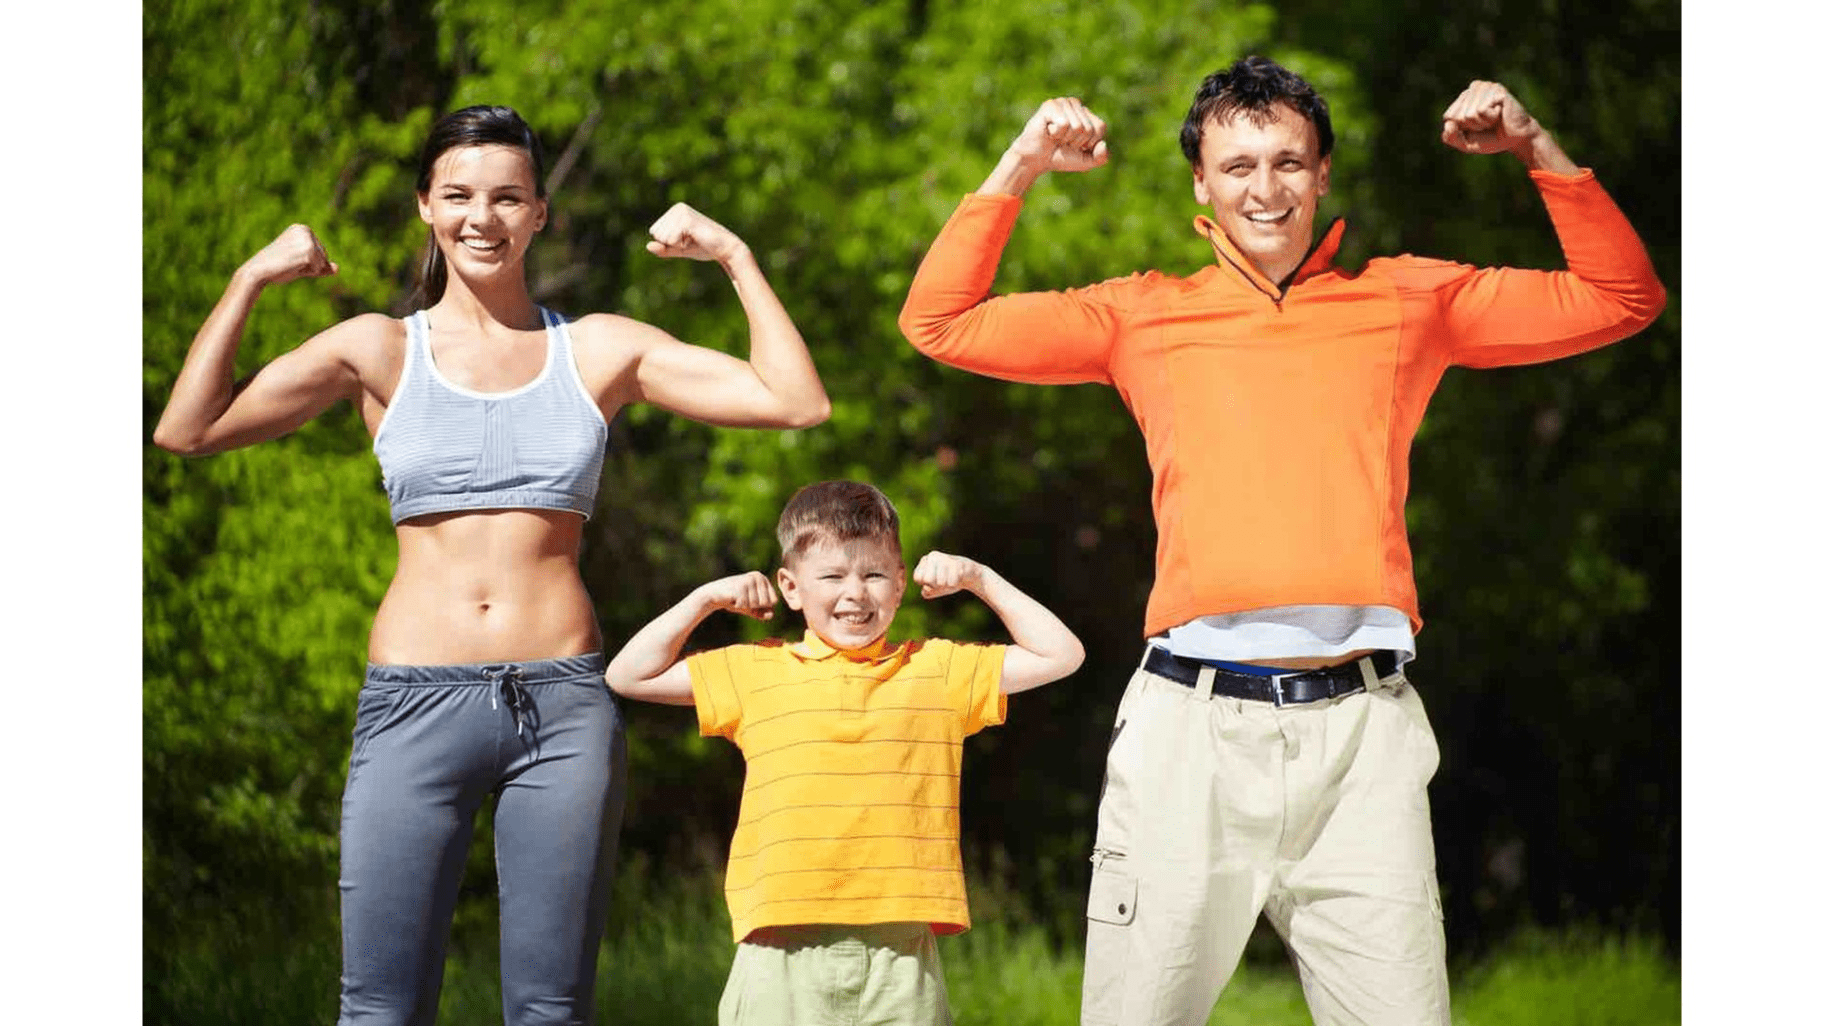 Физическая зарядка. Спортивная семья. Здоровый образ жизни. Здоровый человек. Активный образ жизни.